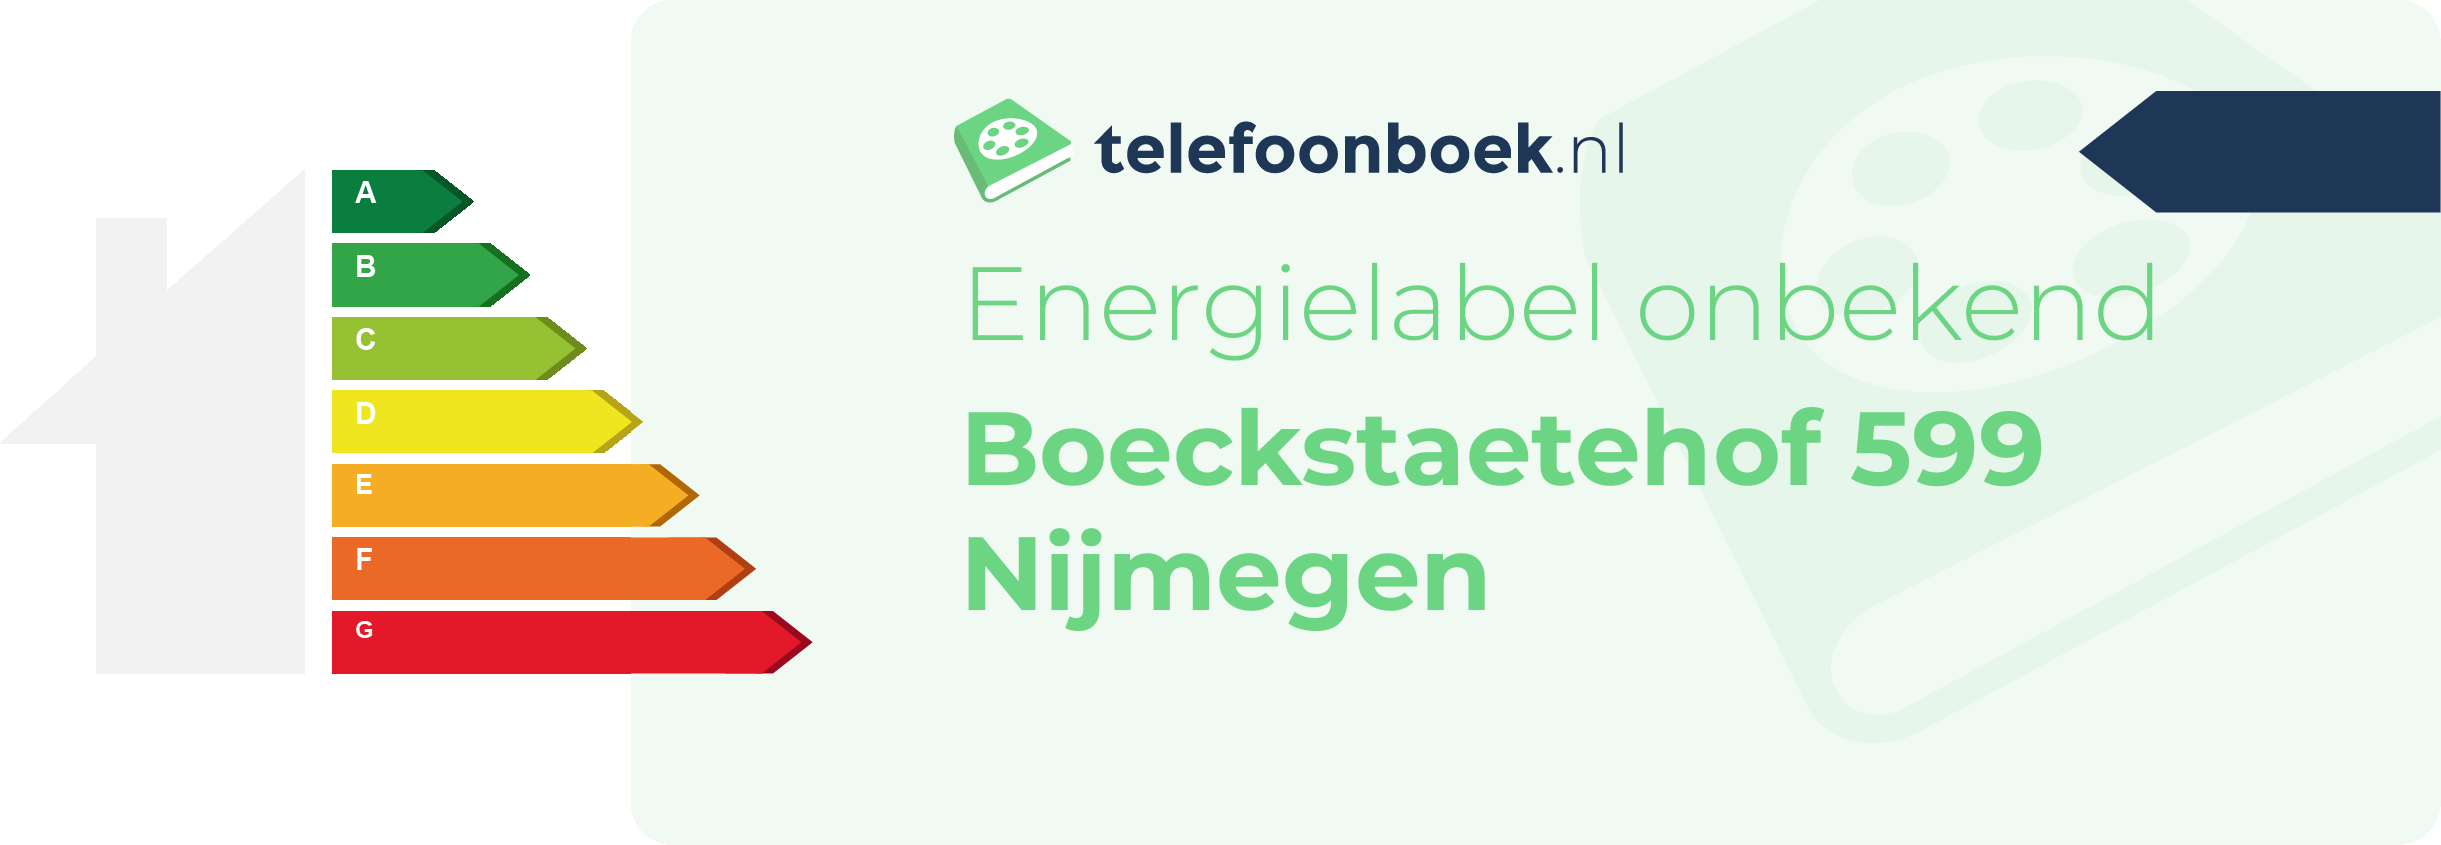 Energielabel Boeckstaetehof 599 Nijmegen